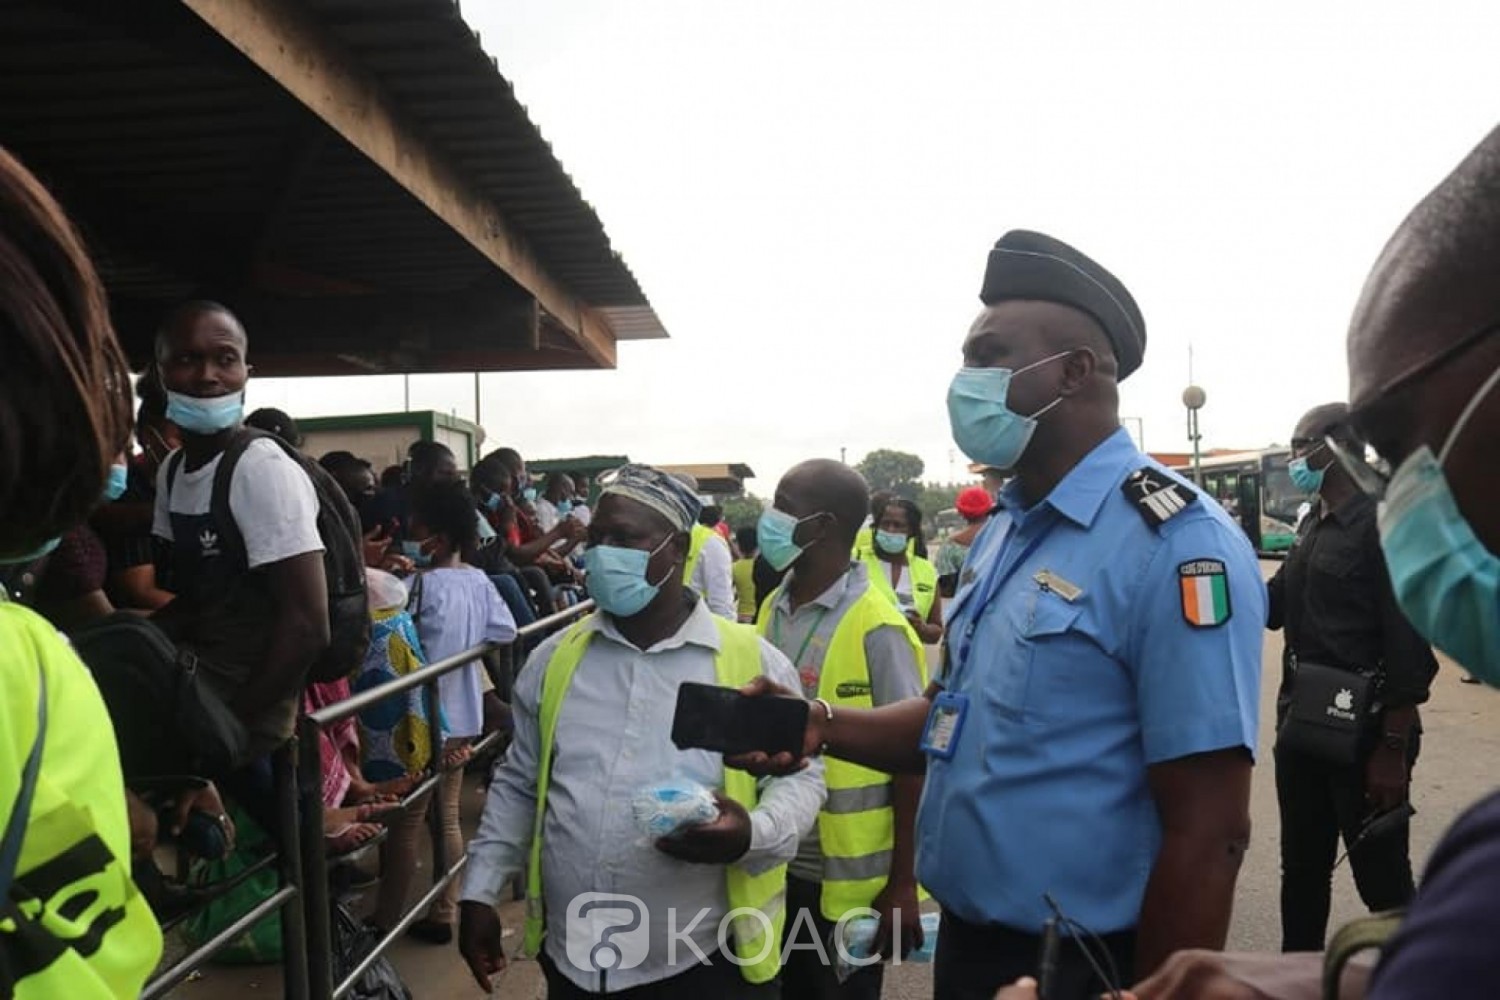 Côte d'Ivoire :    COVID-19, le Gouvernement appelle à la vigilance et au respect des mesures barrières dans les transports, les lieux publics pendant les fêtes de fin d'année